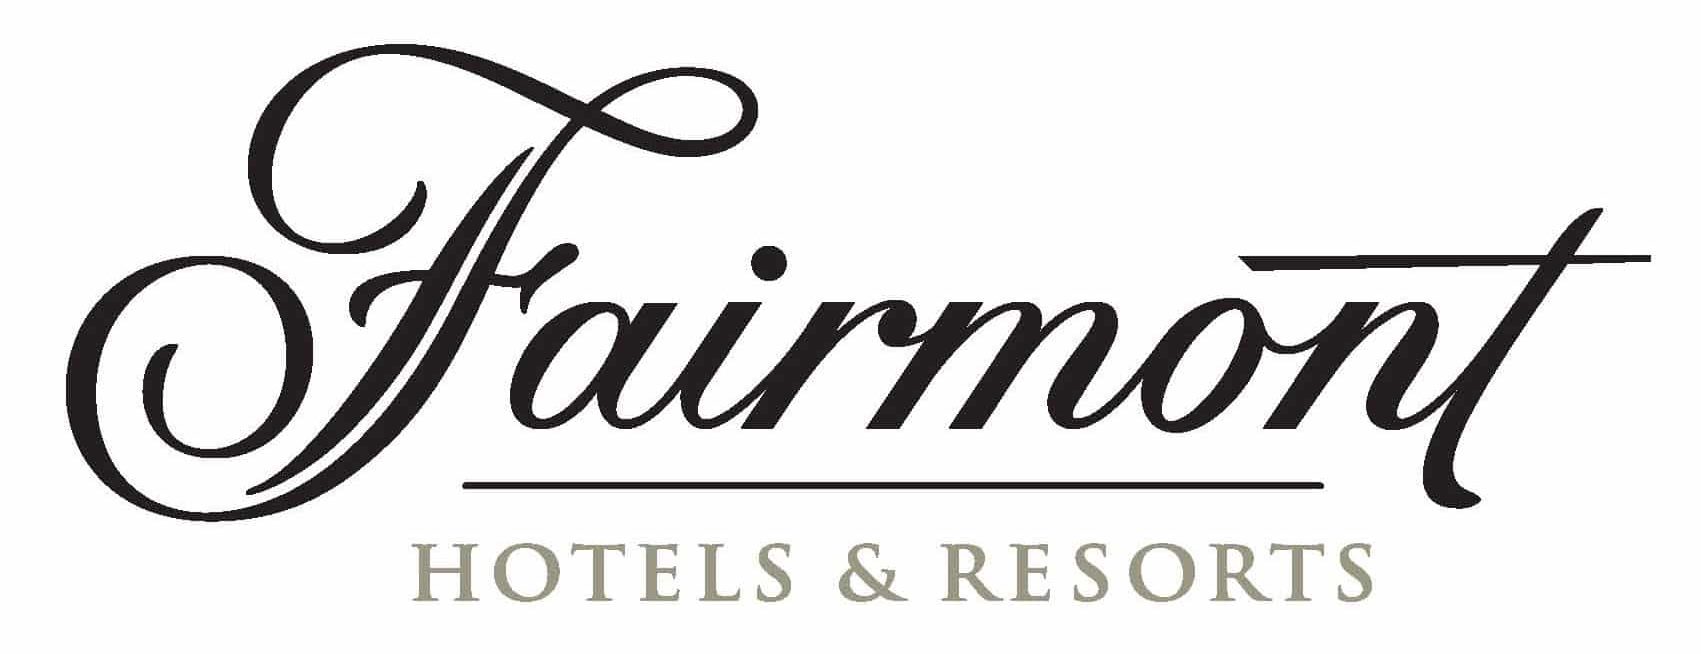 Logotipo de los hoteles Fairmont